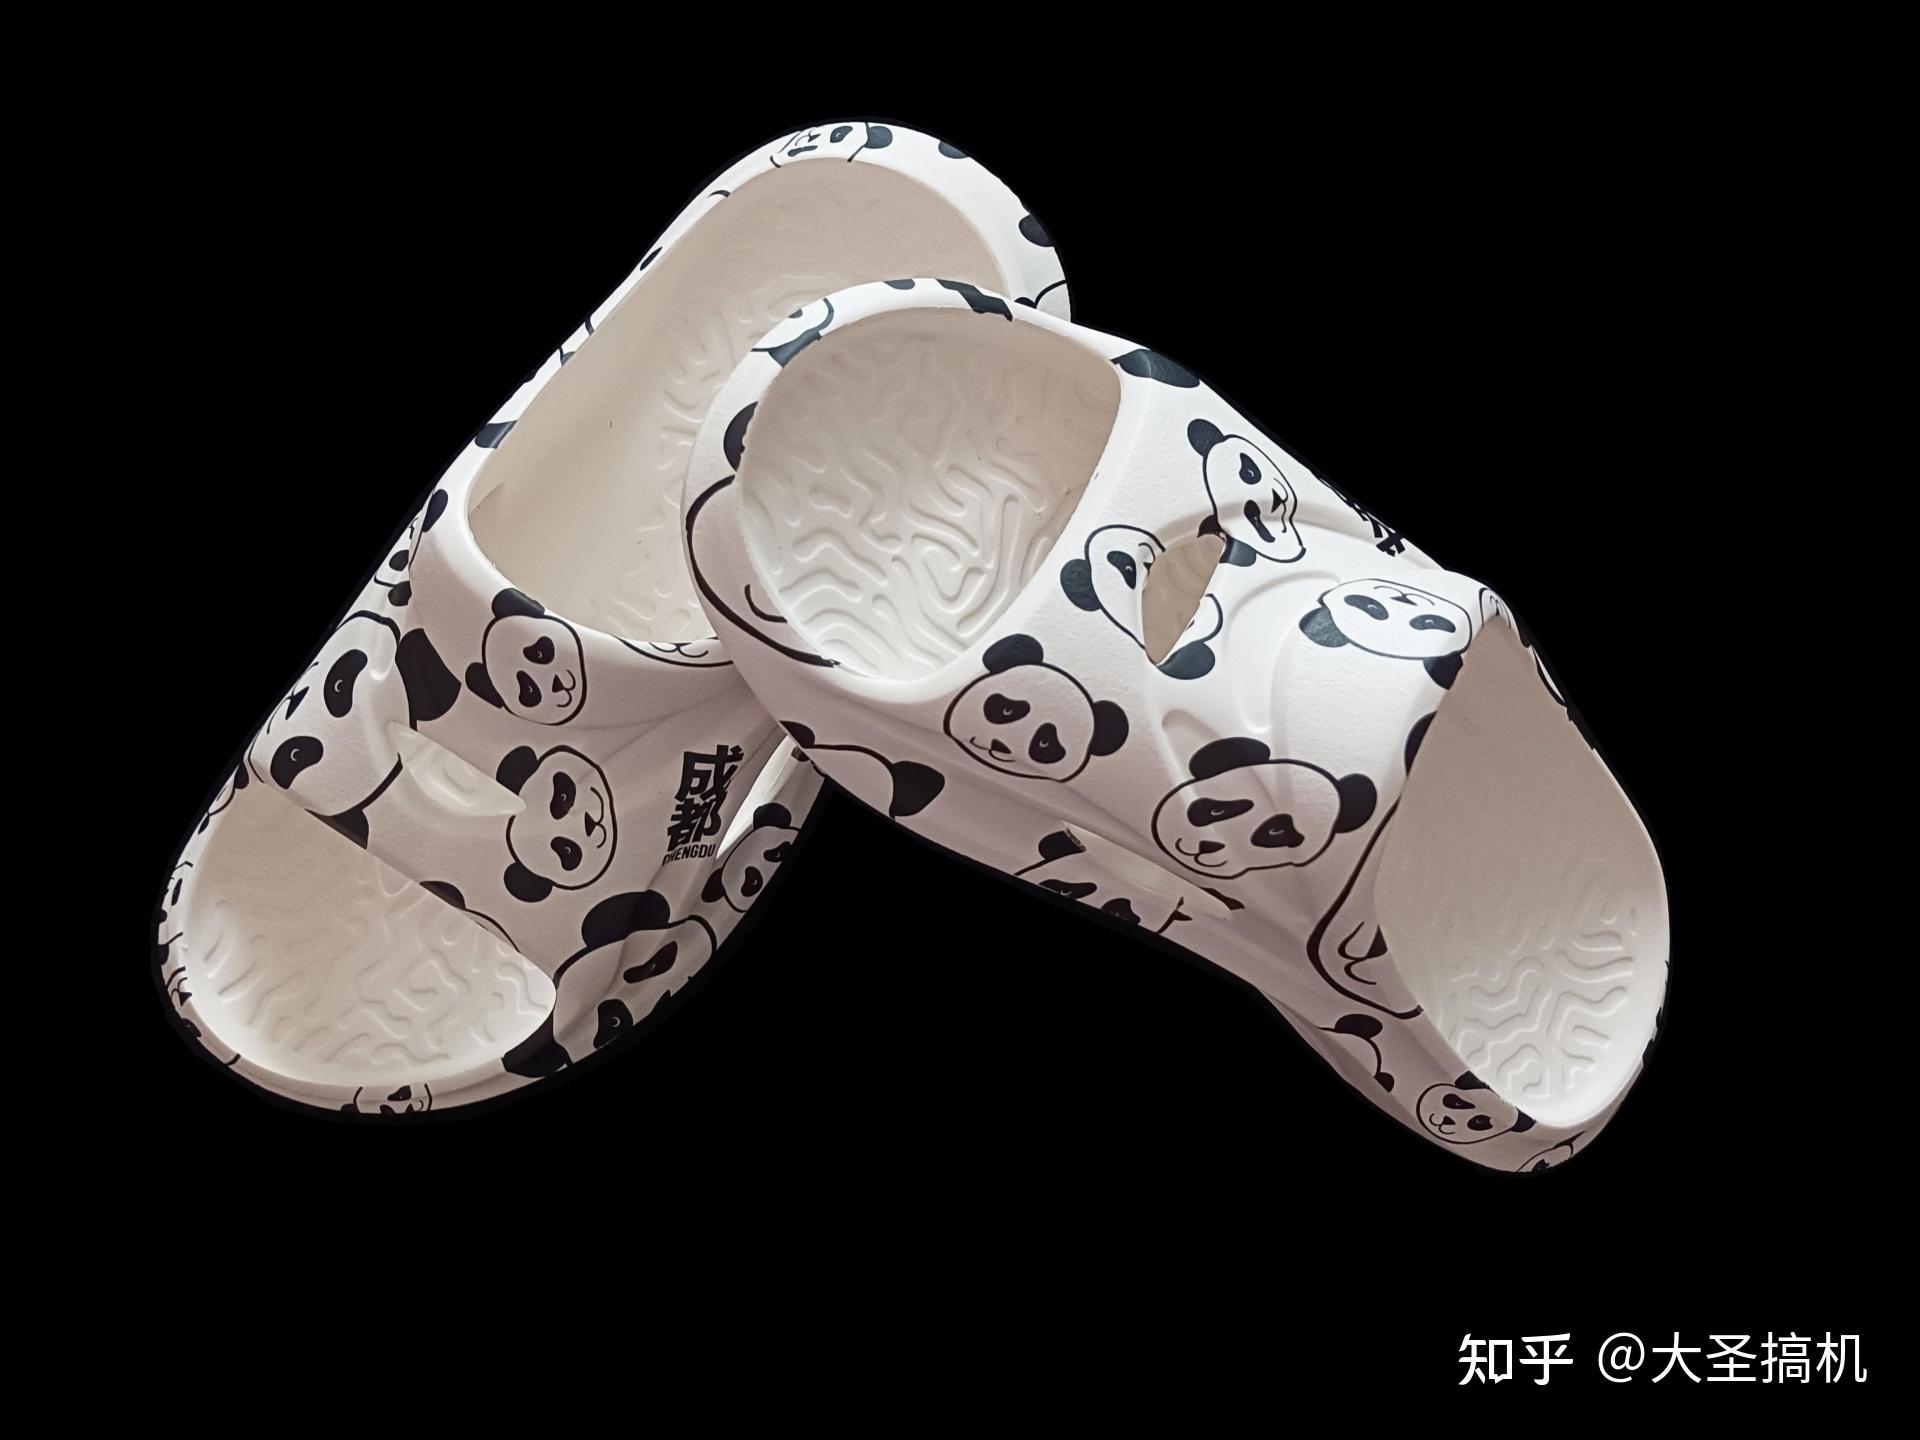 厂家直批新款卡通熊猫拖鞋室内防滑保暖加厚拖鞋可爱情侣亲子棉鞋-阿里巴巴